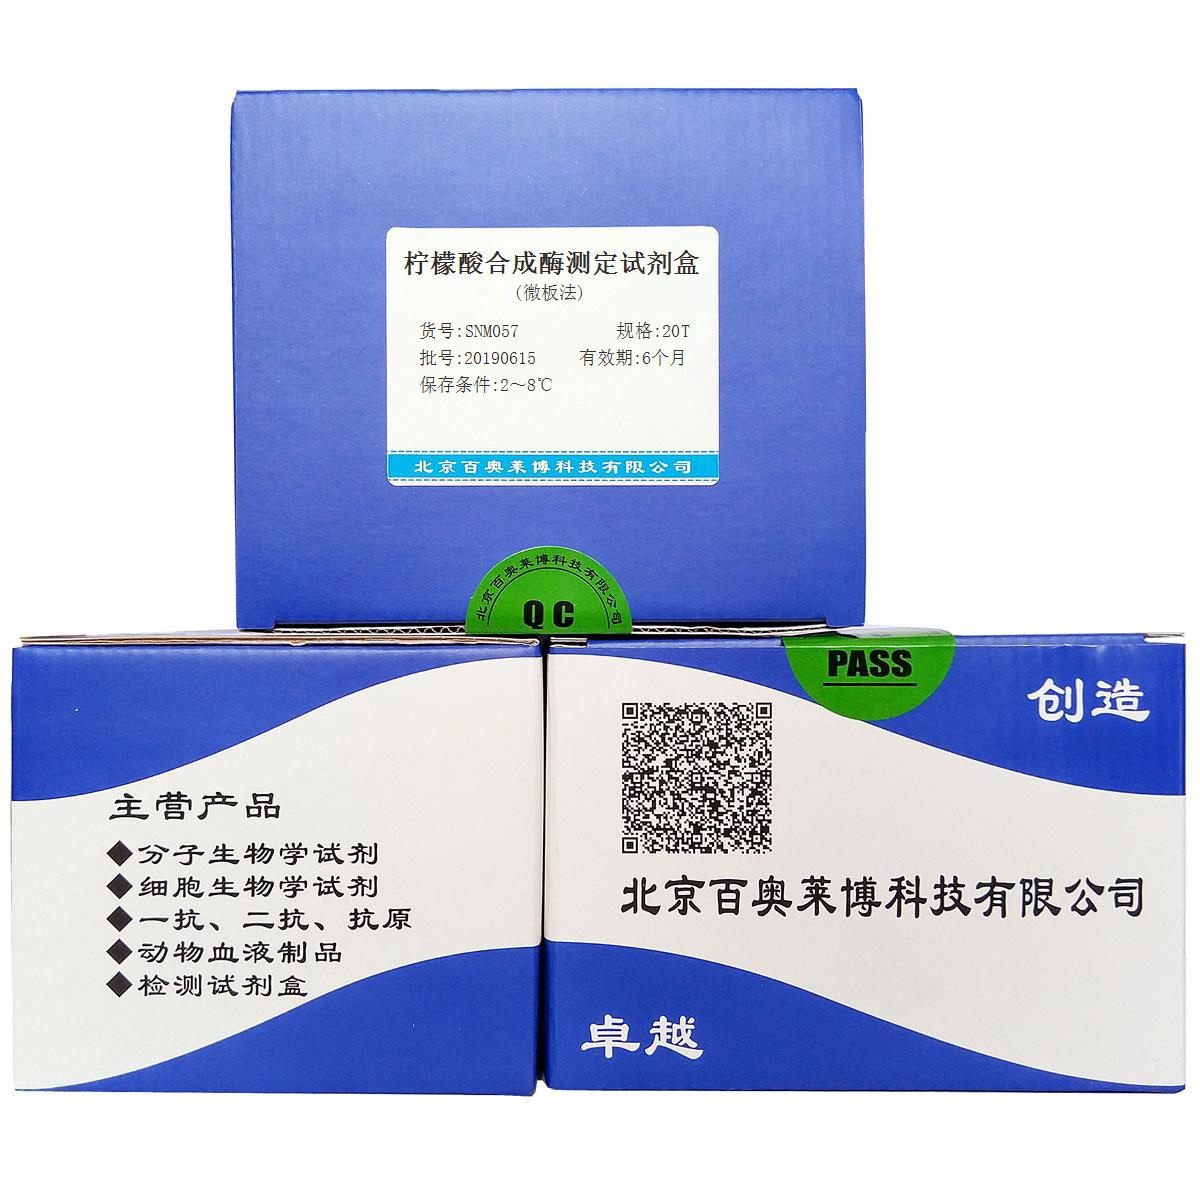 柠檬酸合成酶测定试剂盒(微板法)优惠促销